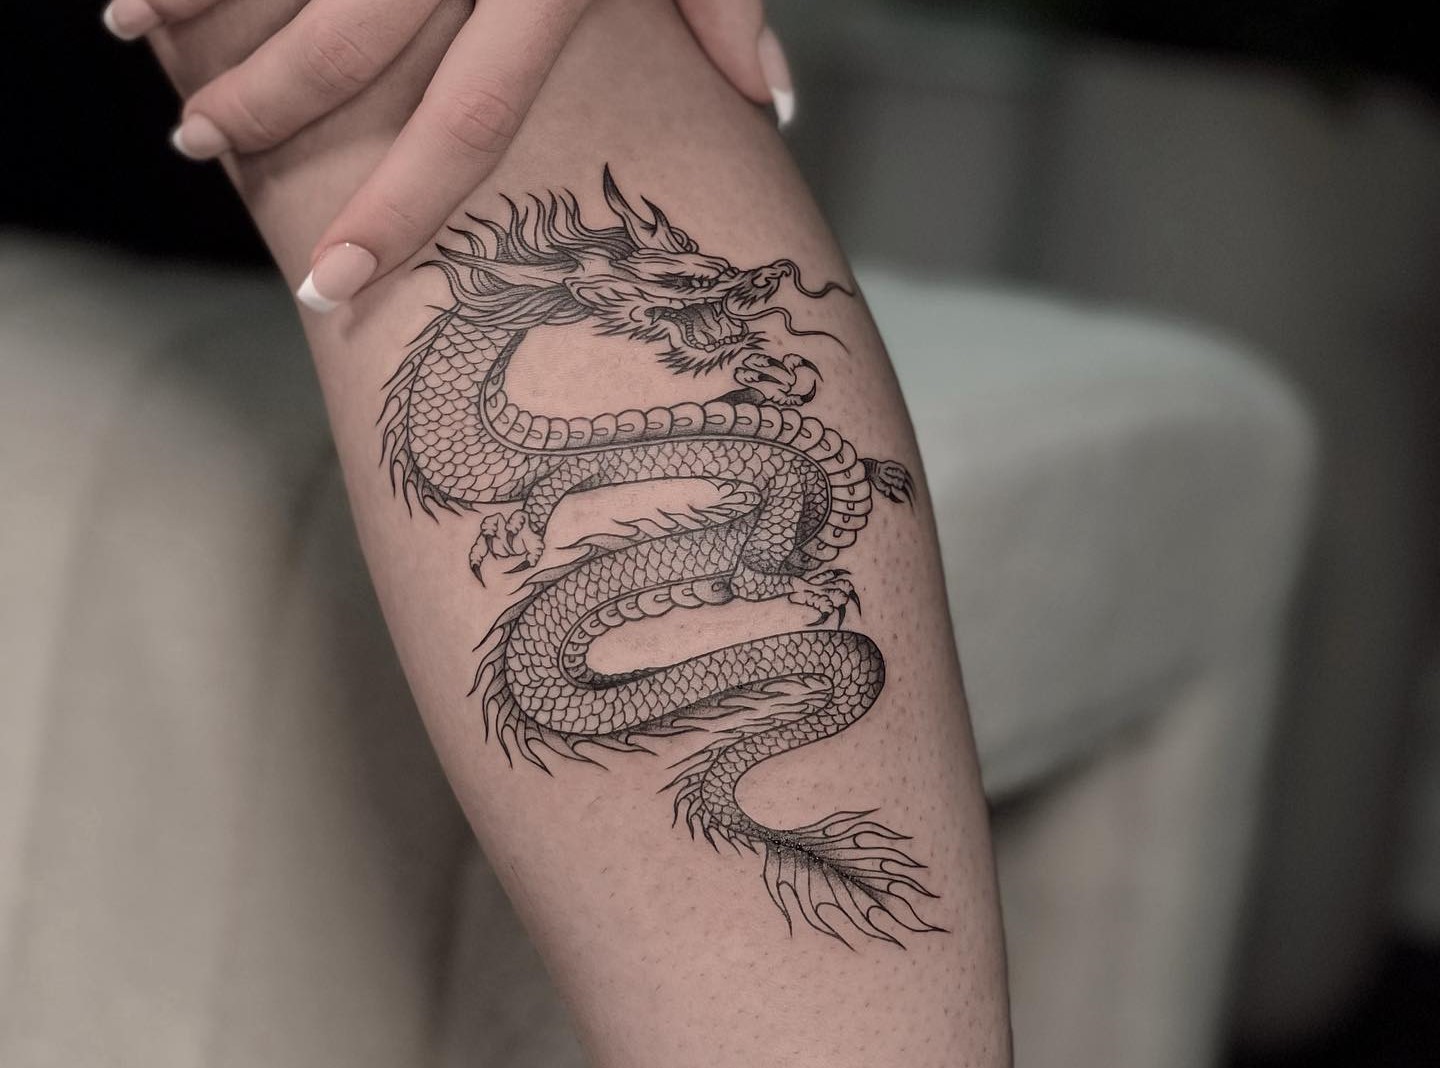 Minimal dragons tattoo by Yash inkspiredyash skinmachinetattoo   dragontattoo minimaldragons skinmachinetattoo  Instagram